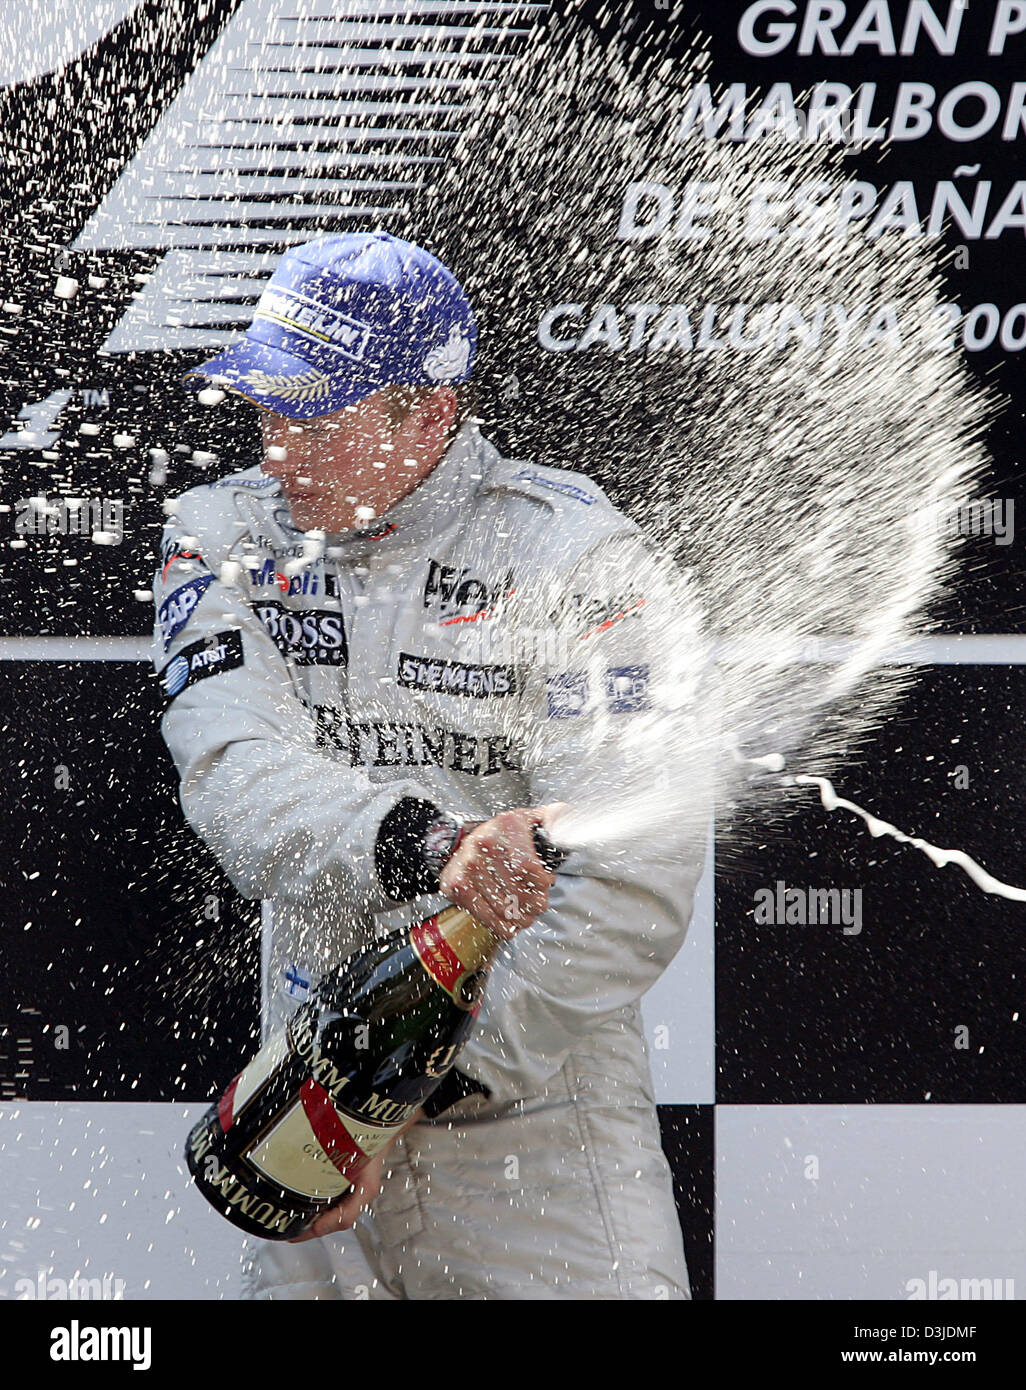 (Dpa) - Finlandese pilota di Formula Uno Kimi Raeikkoenen della McLaren Mercedes celebra la sua vittoria di irrorazione con lo champagne sul podio dopo il Gran Premio di Spagna in gara di F1 Via Circuit de Catalunya nei pressi di Barcellona, Spagna, 8 maggio 2005. Foto Stock